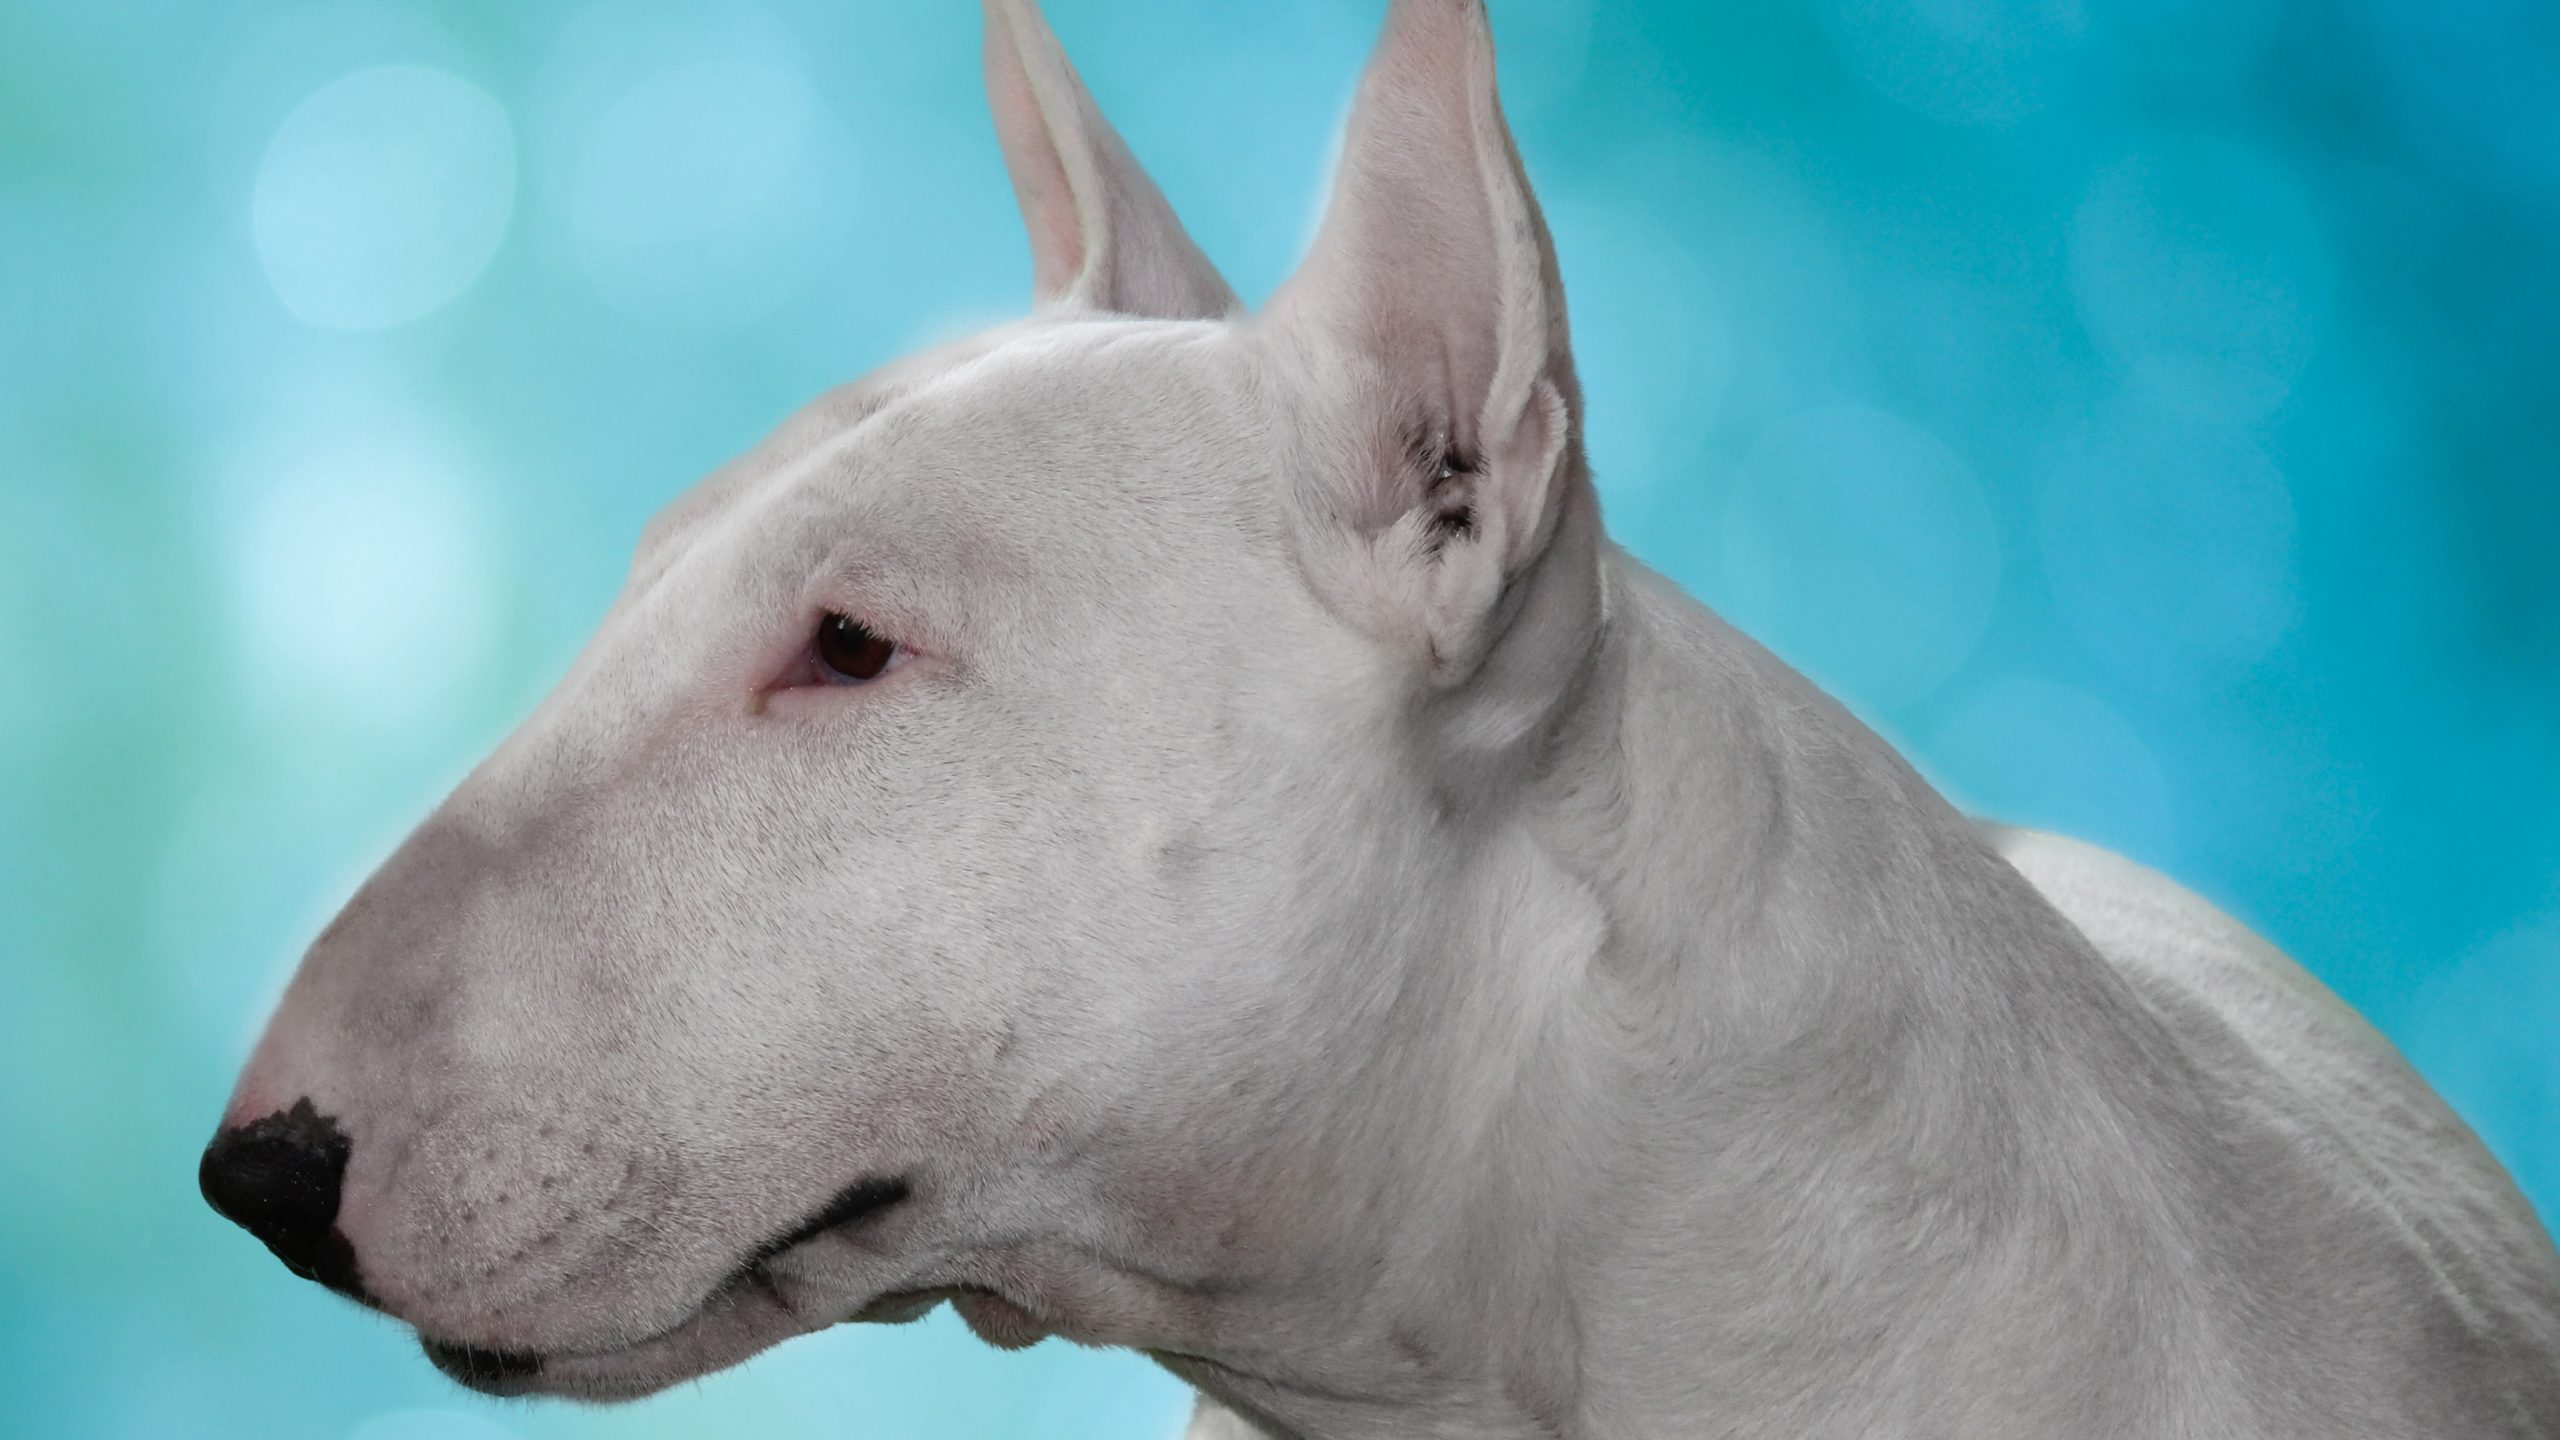 Jogos Do Cão De Bull Terrier Do Inglês Com Uma Bola Imagem de